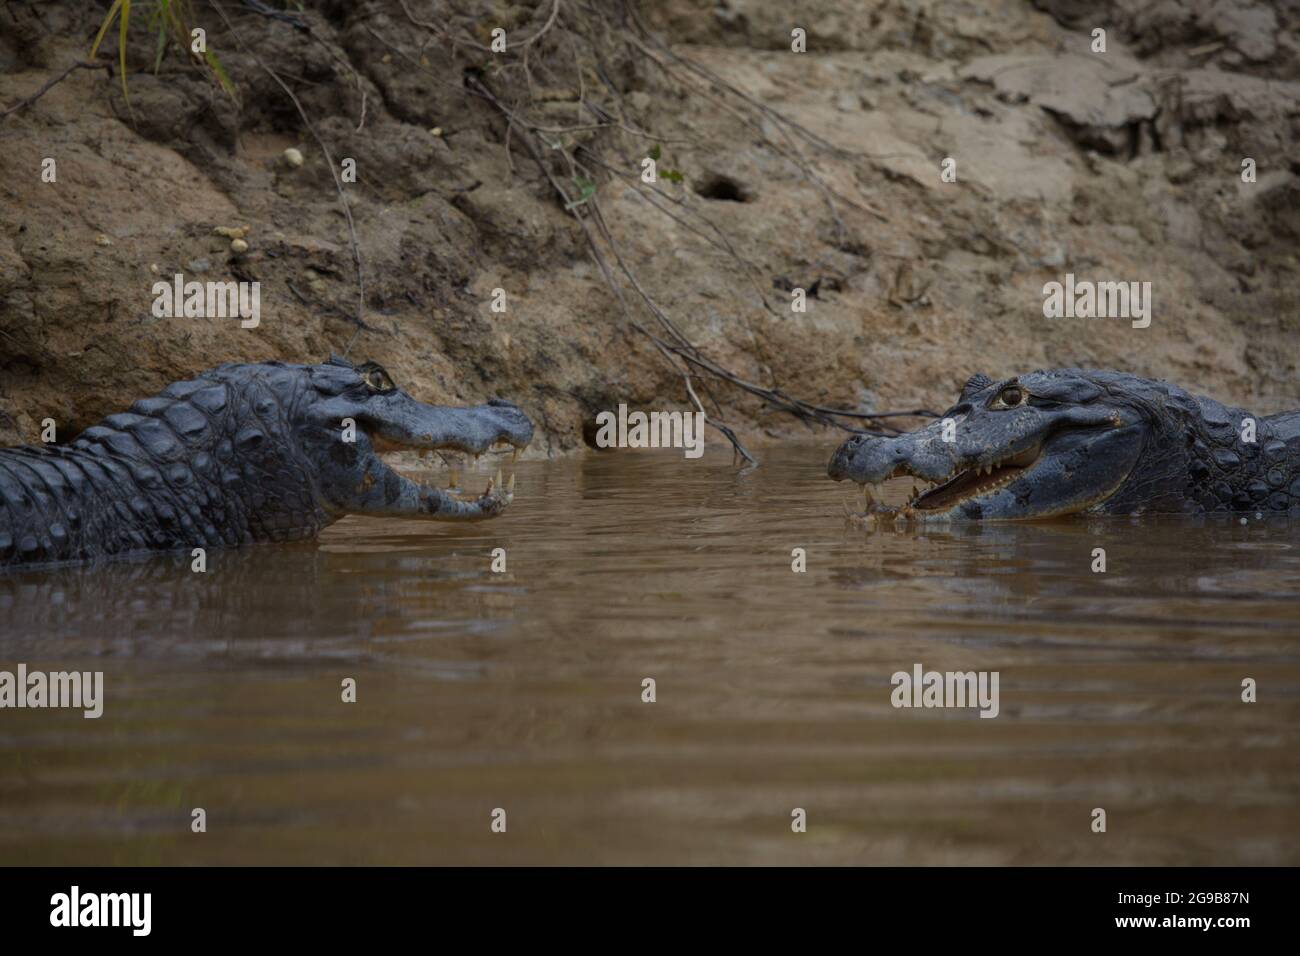 Primo piano ritratto di due Black Caiman (Melanosuchus niger) che combattono in acqua con le ganasce aperte mostrando i denti Pampas del Yacuma, Bolivia. Foto Stock